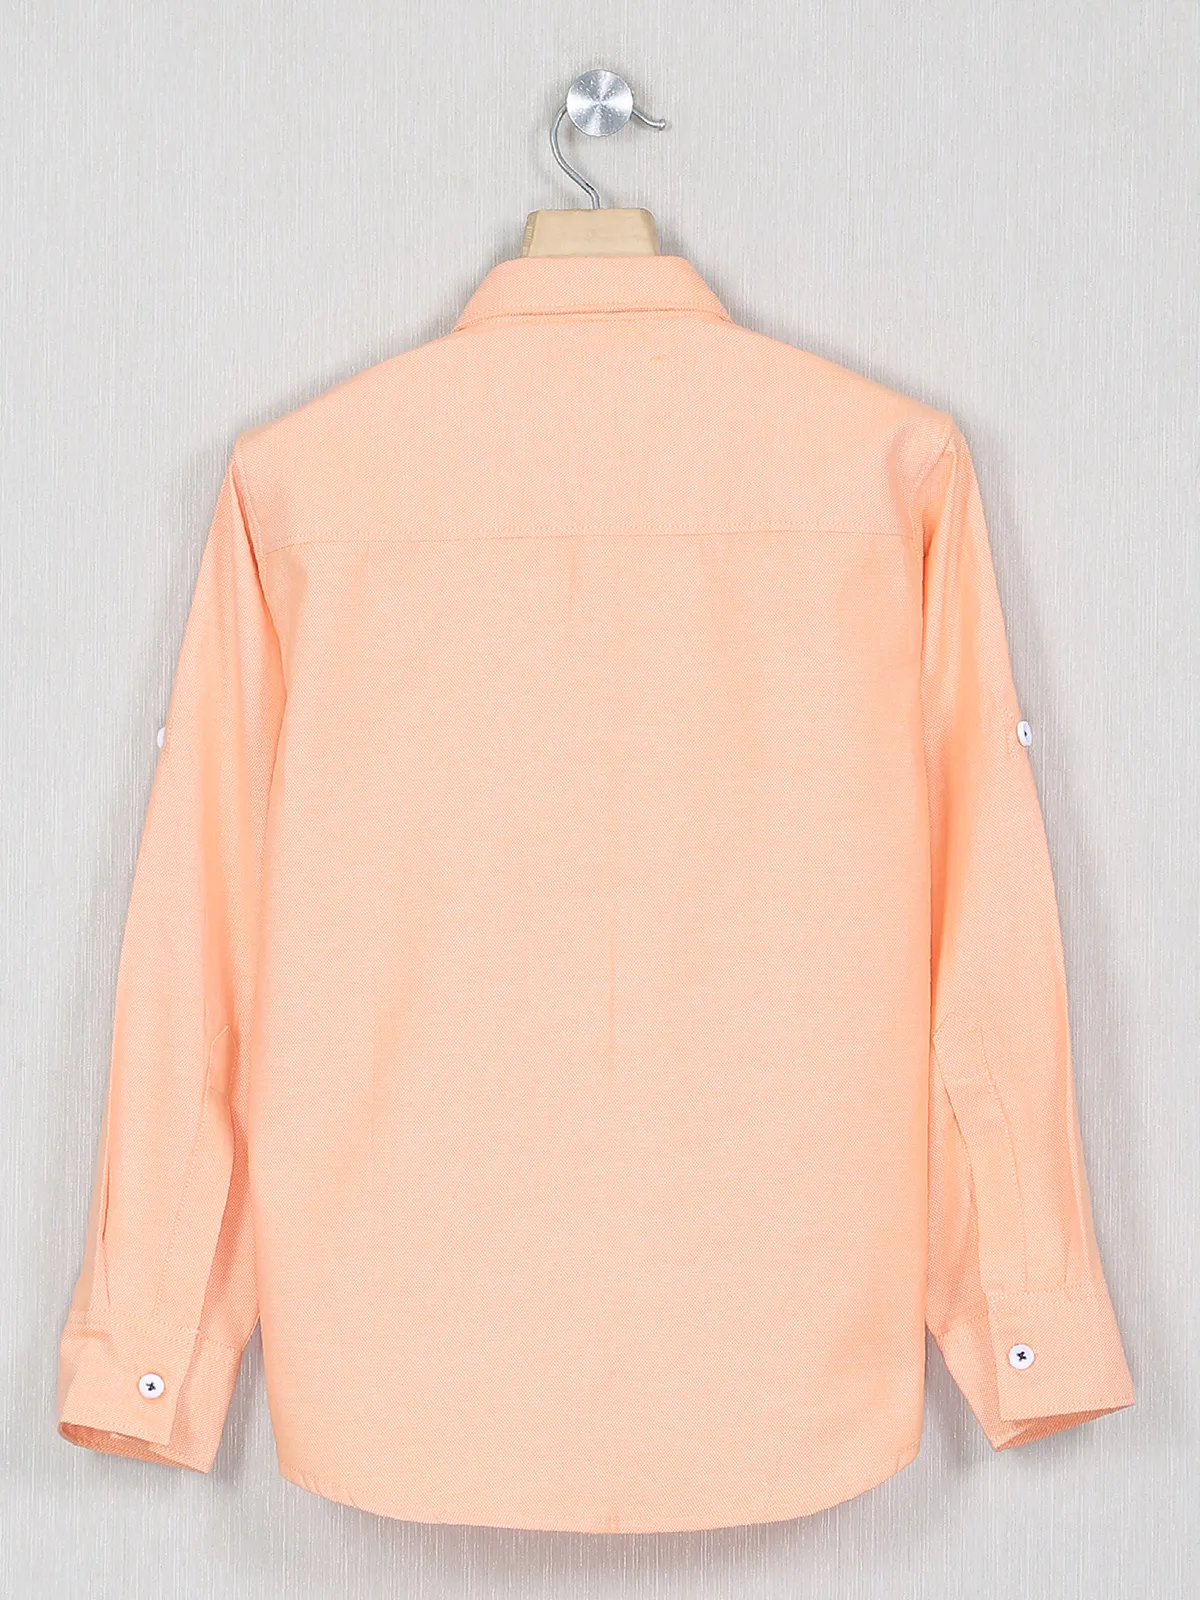 DNJS peach hued casual wear shirt in cotton